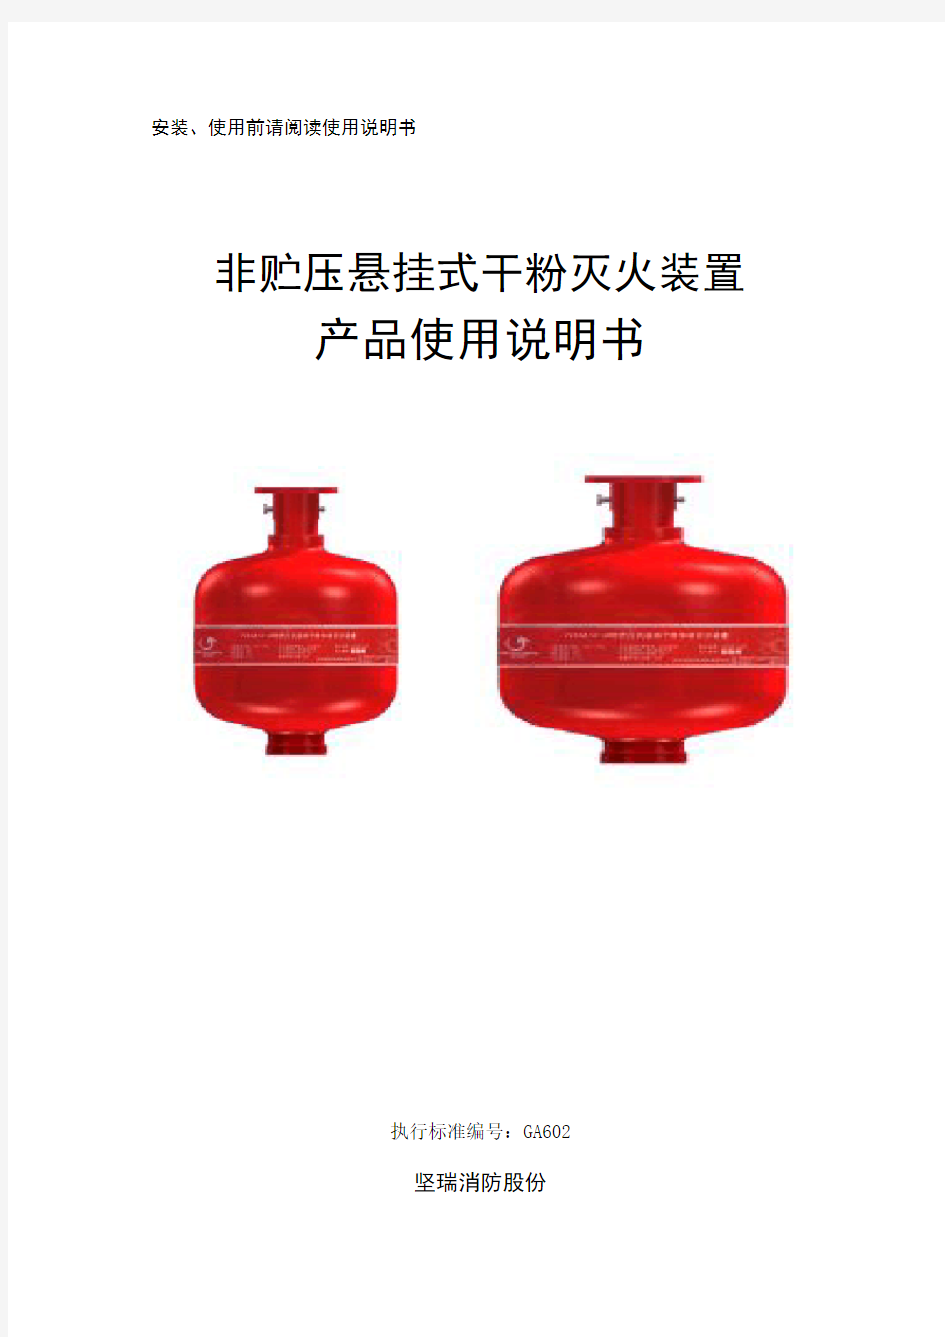 悬挂式超细干粉灭火装置产品使用说明书_文件版